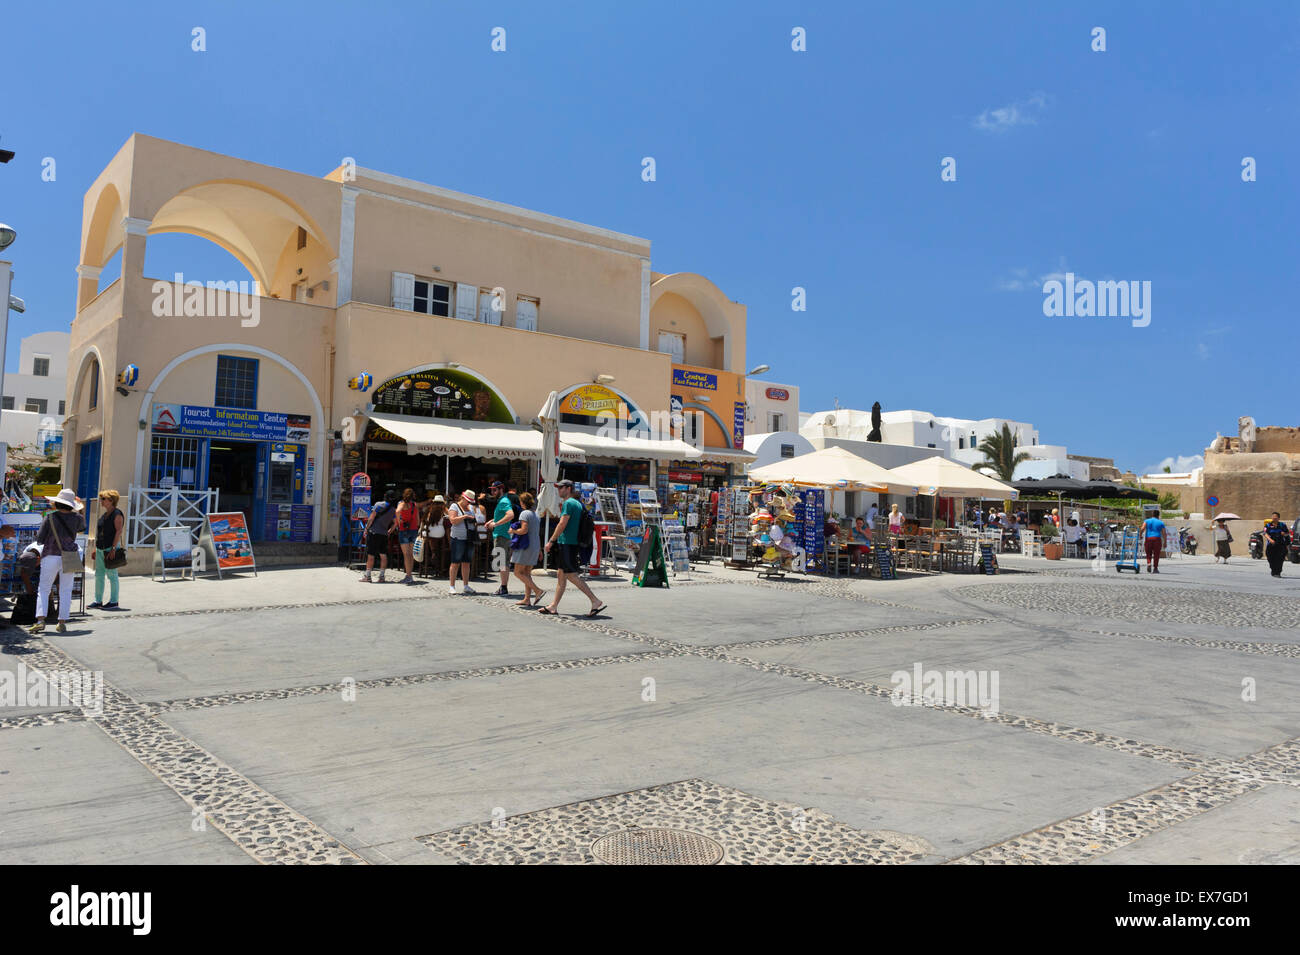 Un commerçant de touristes près de la station de bus à Oia, Santorin, Grèce. Banque D'Images